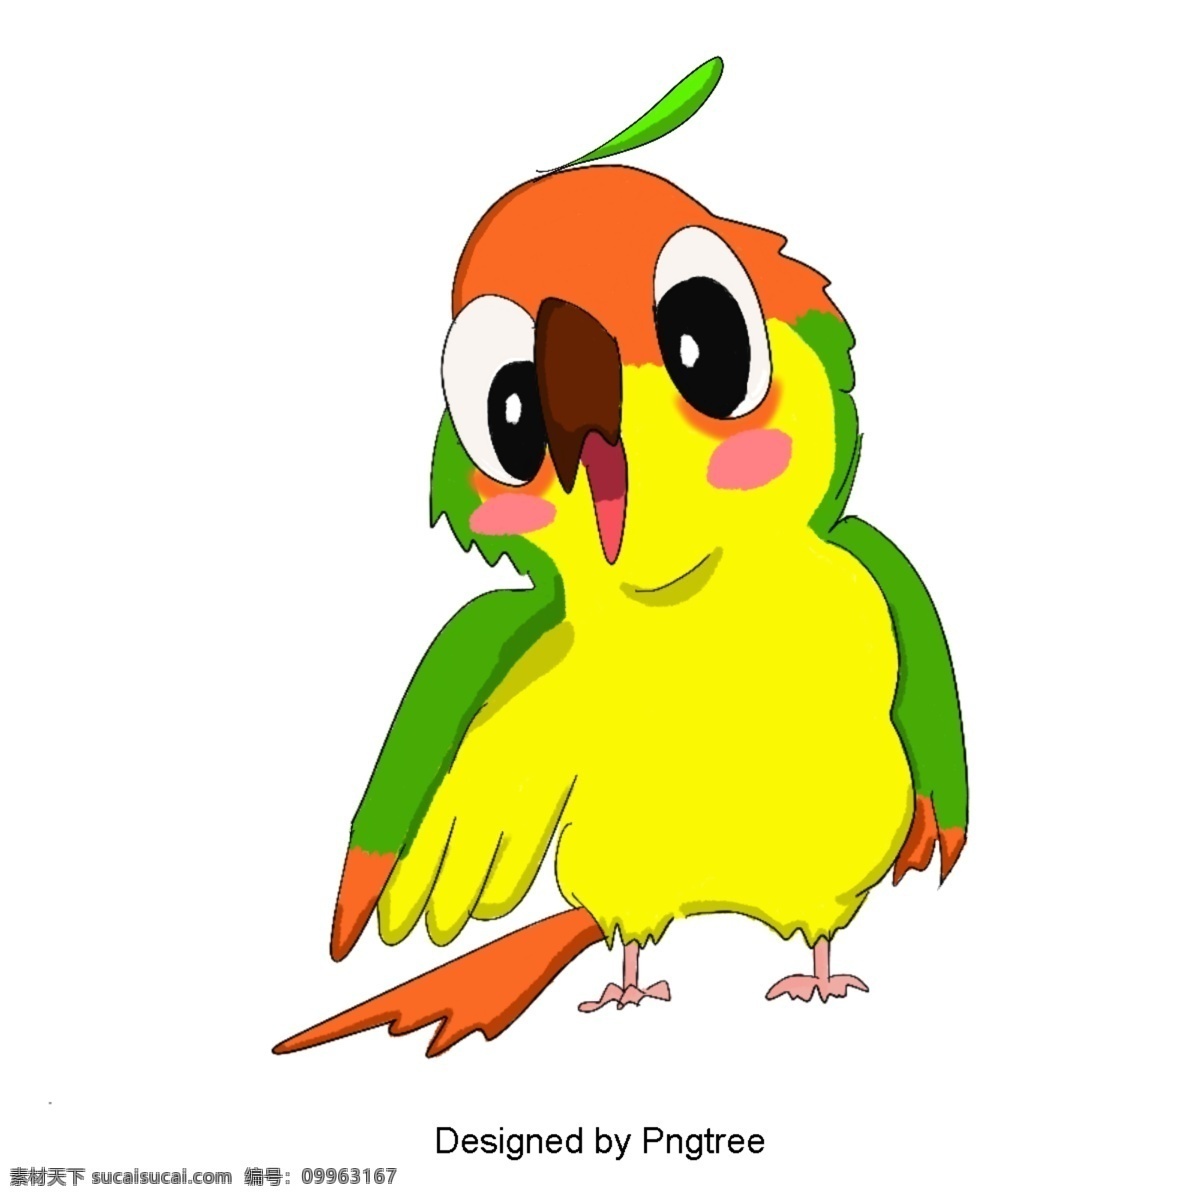 简单 手绘 卡通 鸟 材料 植物 自然 图案 图形设计 颜色 动物 可爱